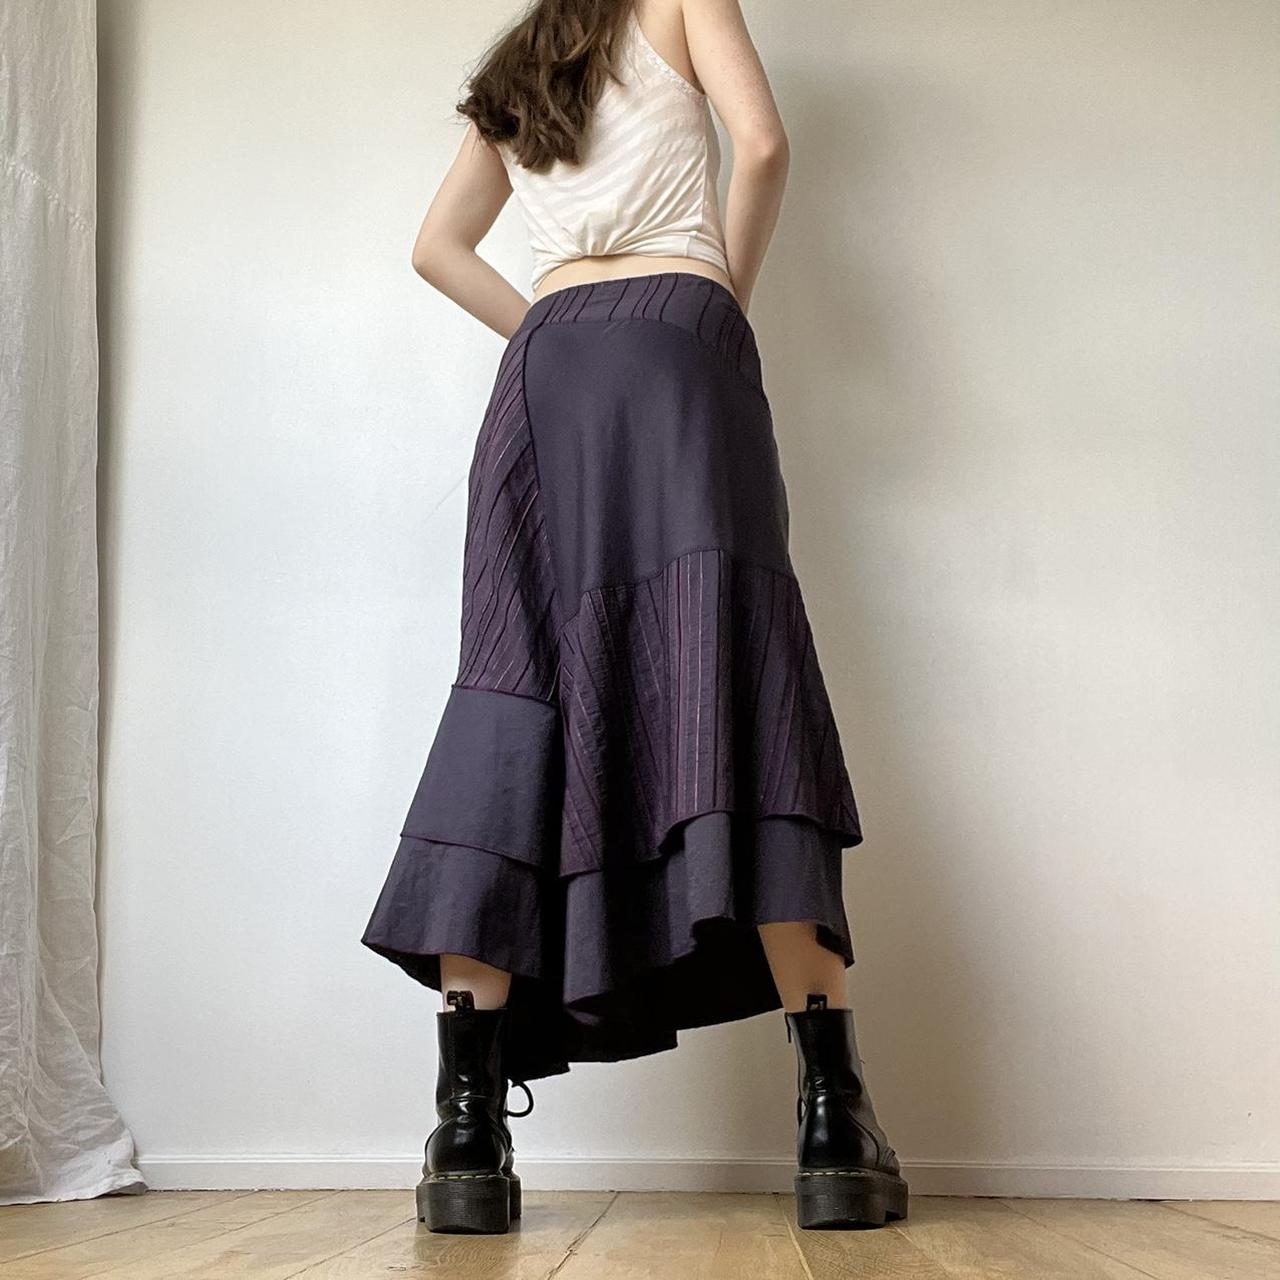 Parachute skirt - purple asymmetrical cargo skirt -... - Depop